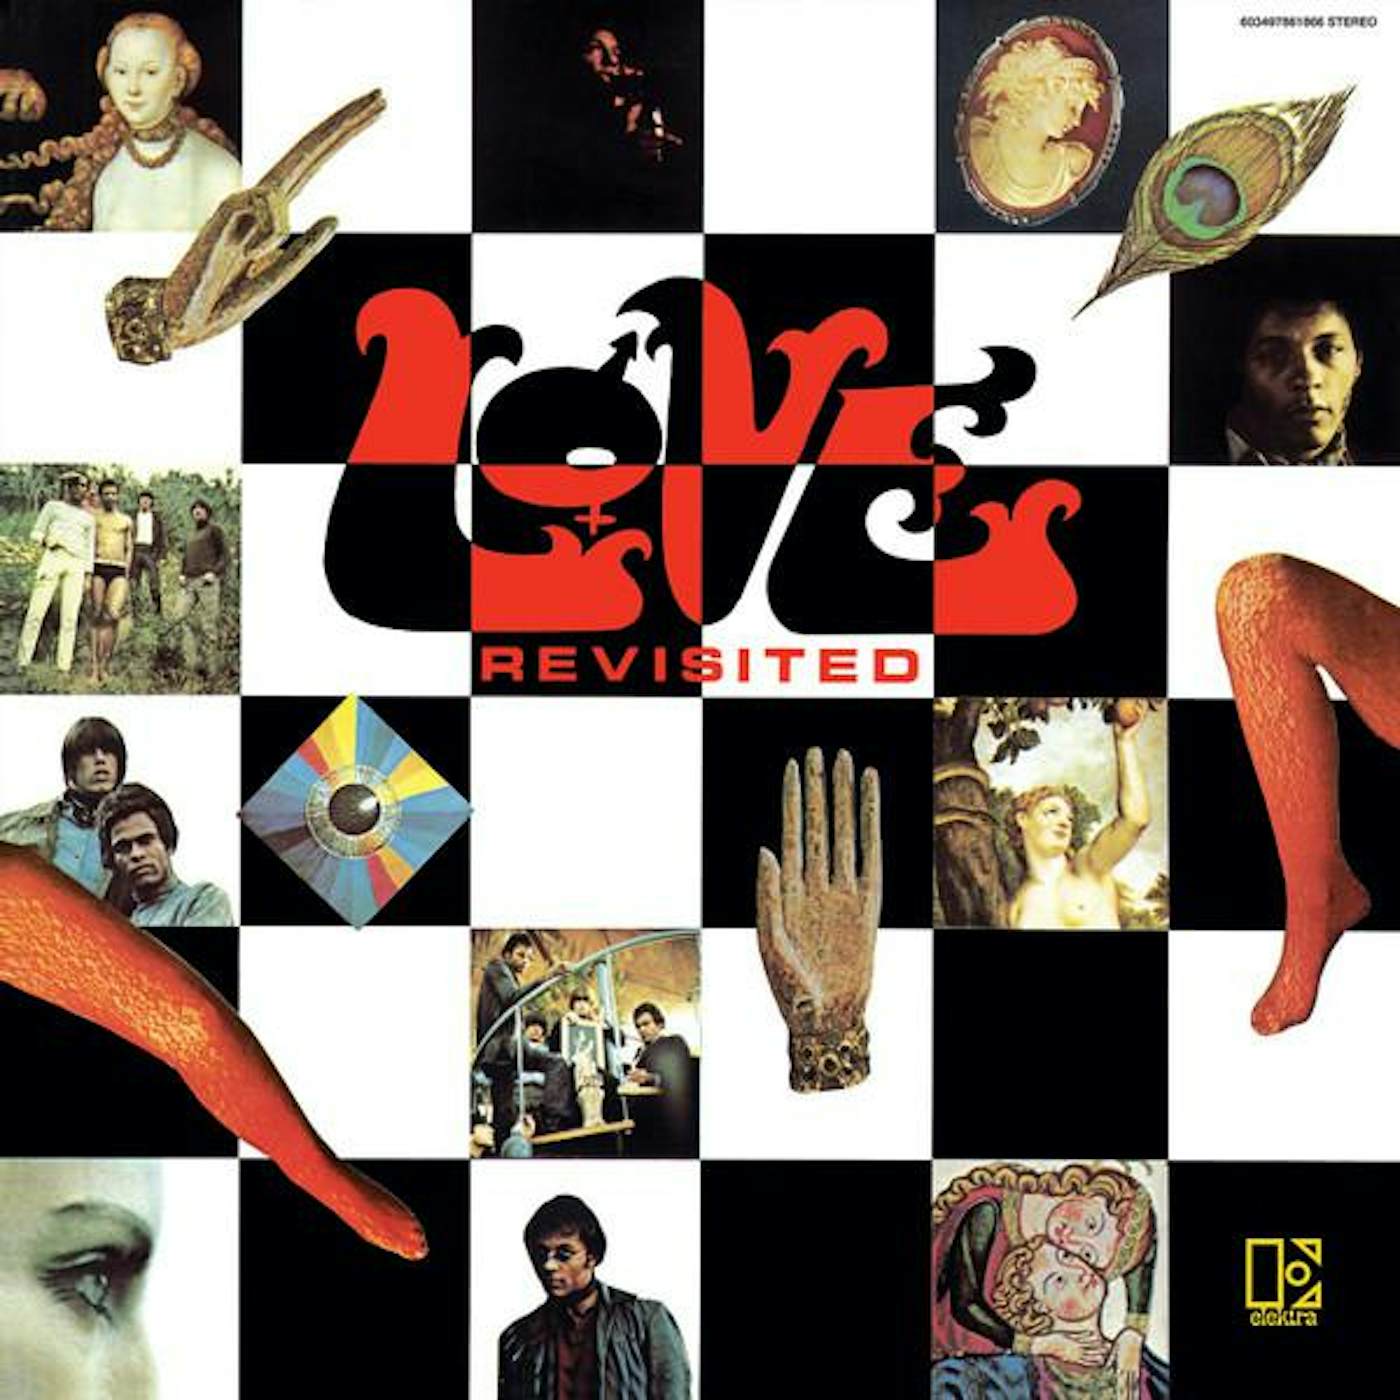 Love REVISITED (RED VINYL) (ROCKTOBER) (I) Vinyl Record